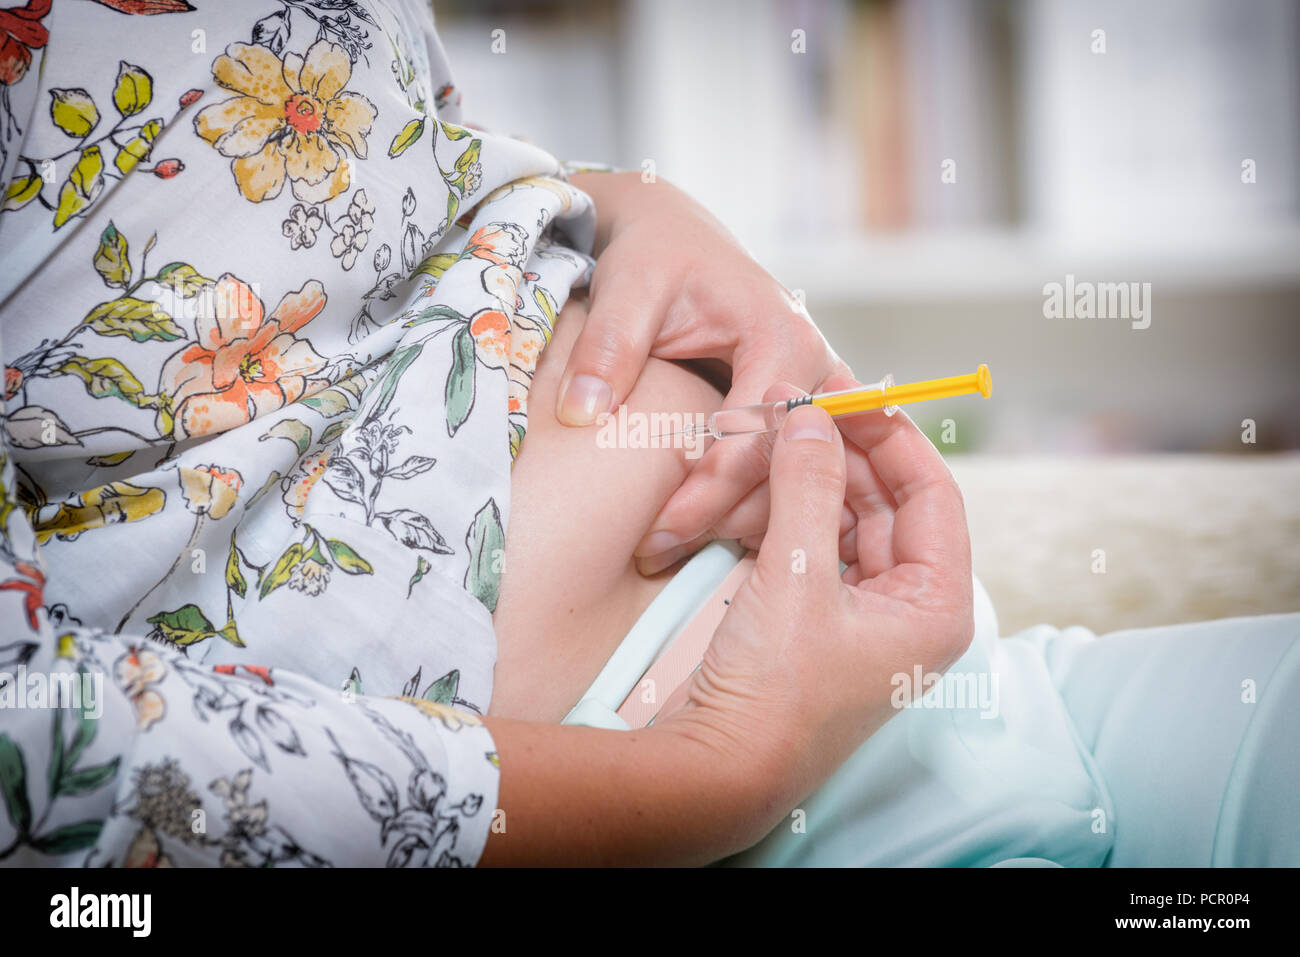 Frau tut ein Insulin oder Heparin Spritzen in ihrem Bauch zu Hause Stockfoto